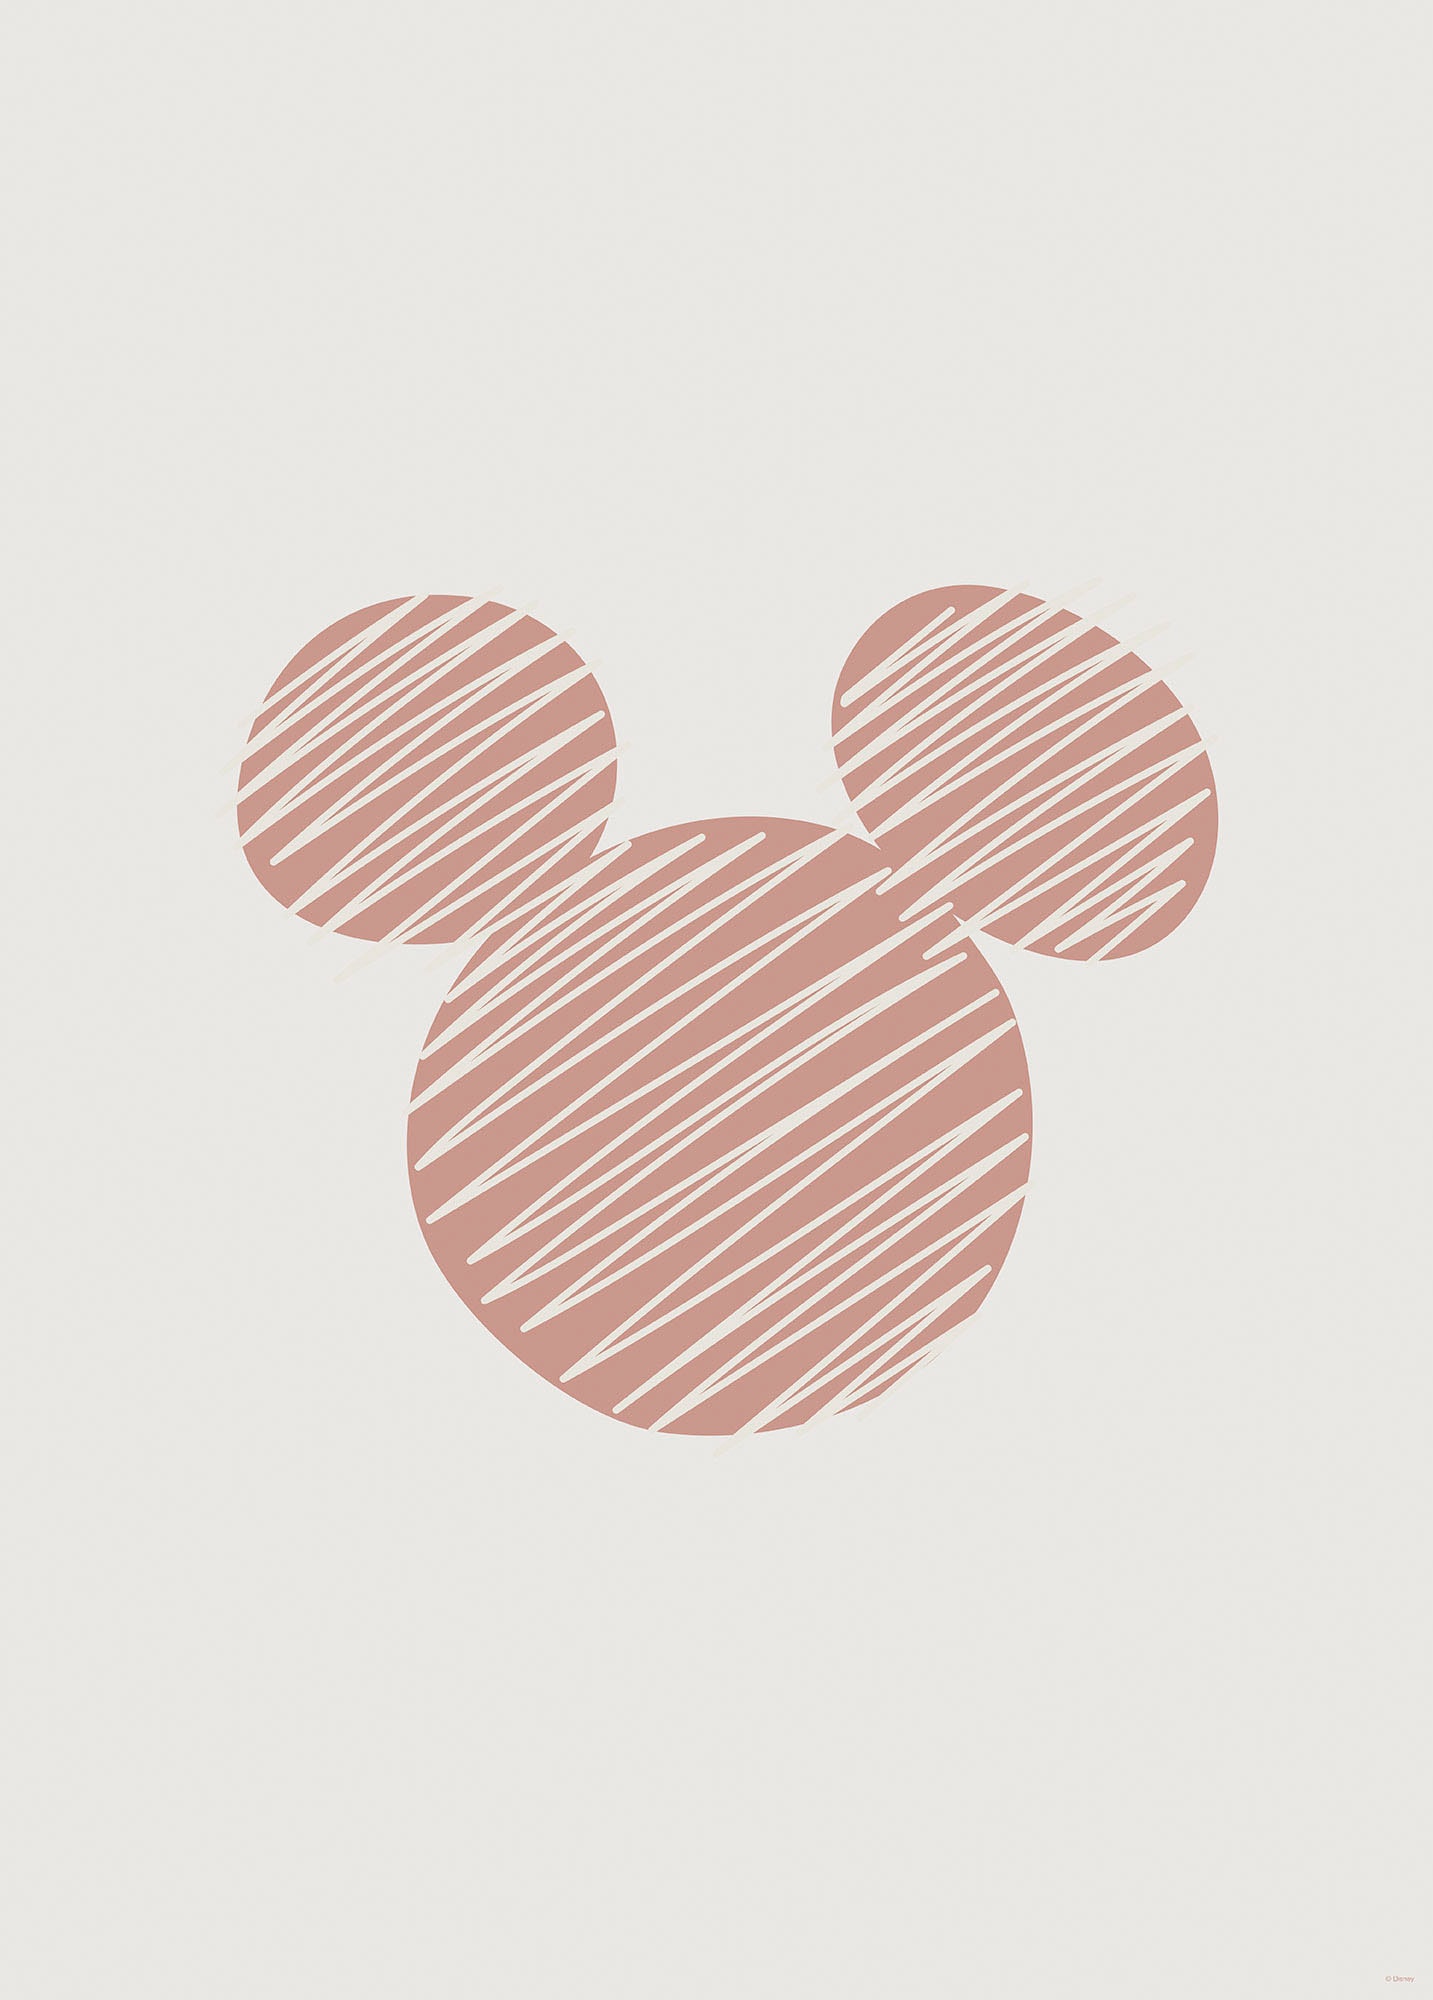 Komar Wandbild "Striped Mouse", (1 St.), Deutsches Premium-Poster Fotopapier mit seidenmatter Oberfläche und hoher Lichtbeständigkeit. Für fotorealistische Drucke mit gestochen scharfen Details und hervorragender Farbbrillanz. von Komar